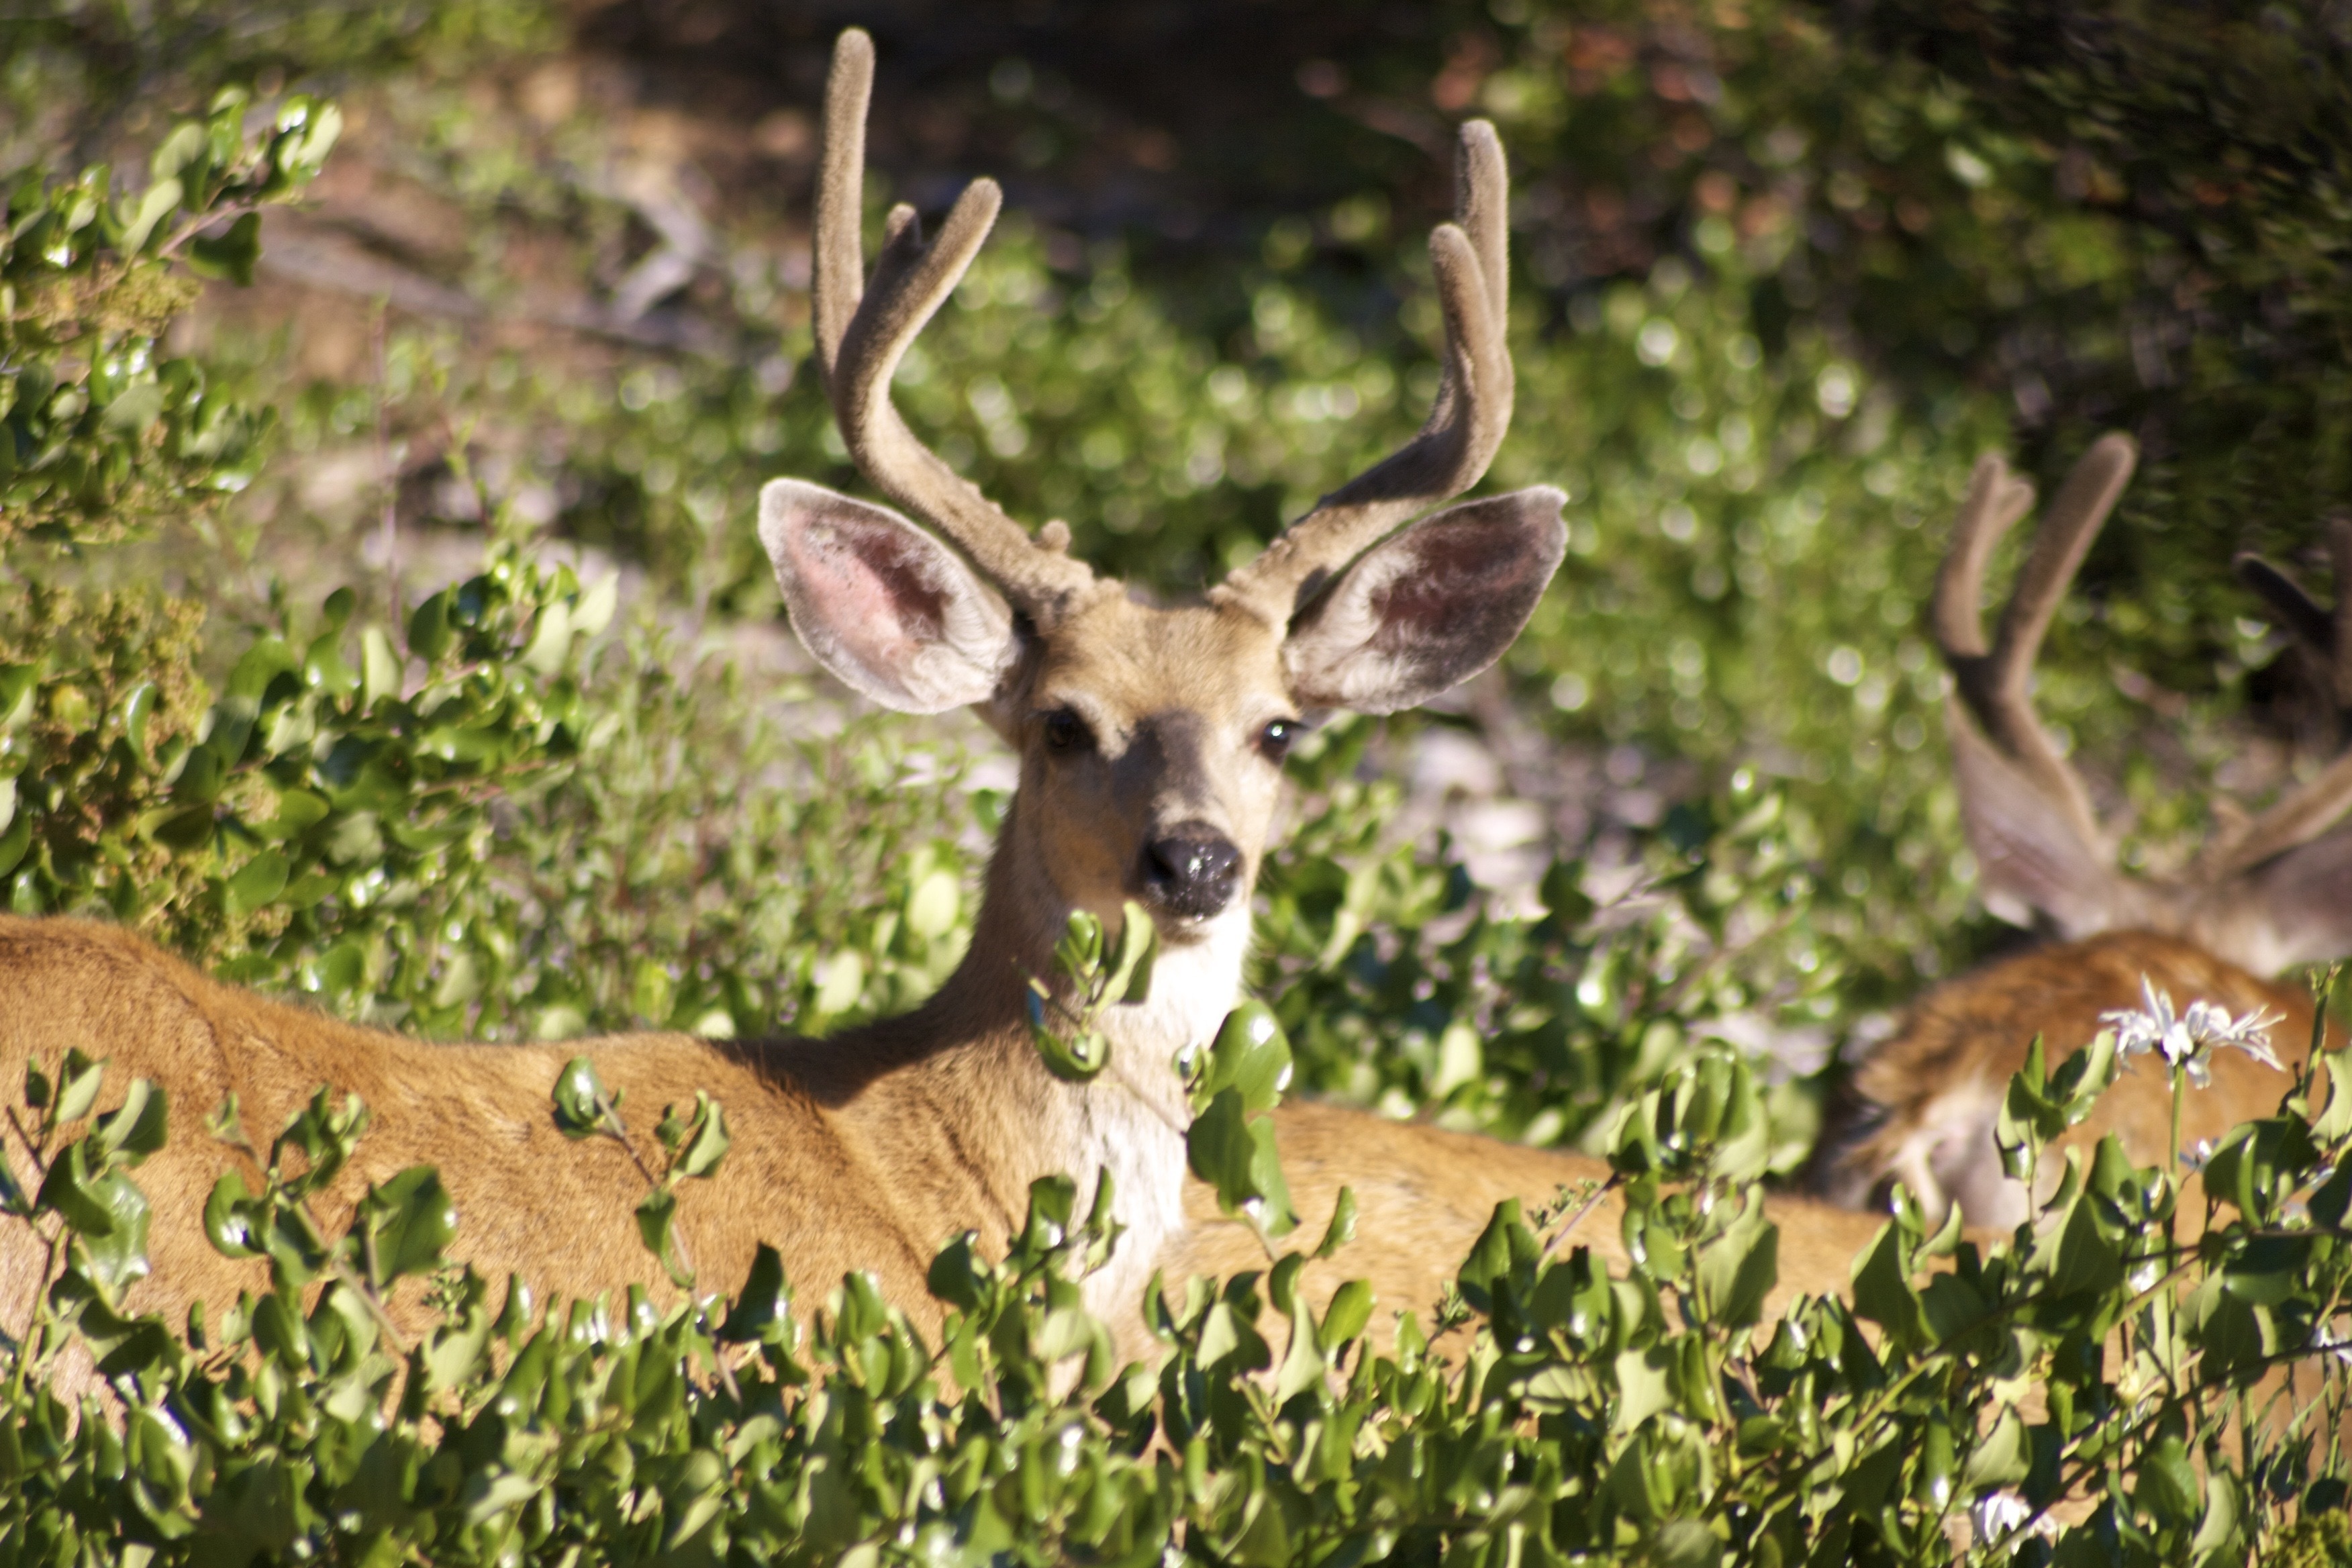 Bucks, Mammal, Stag, Wildlife, Deer, deer, animal wildlife